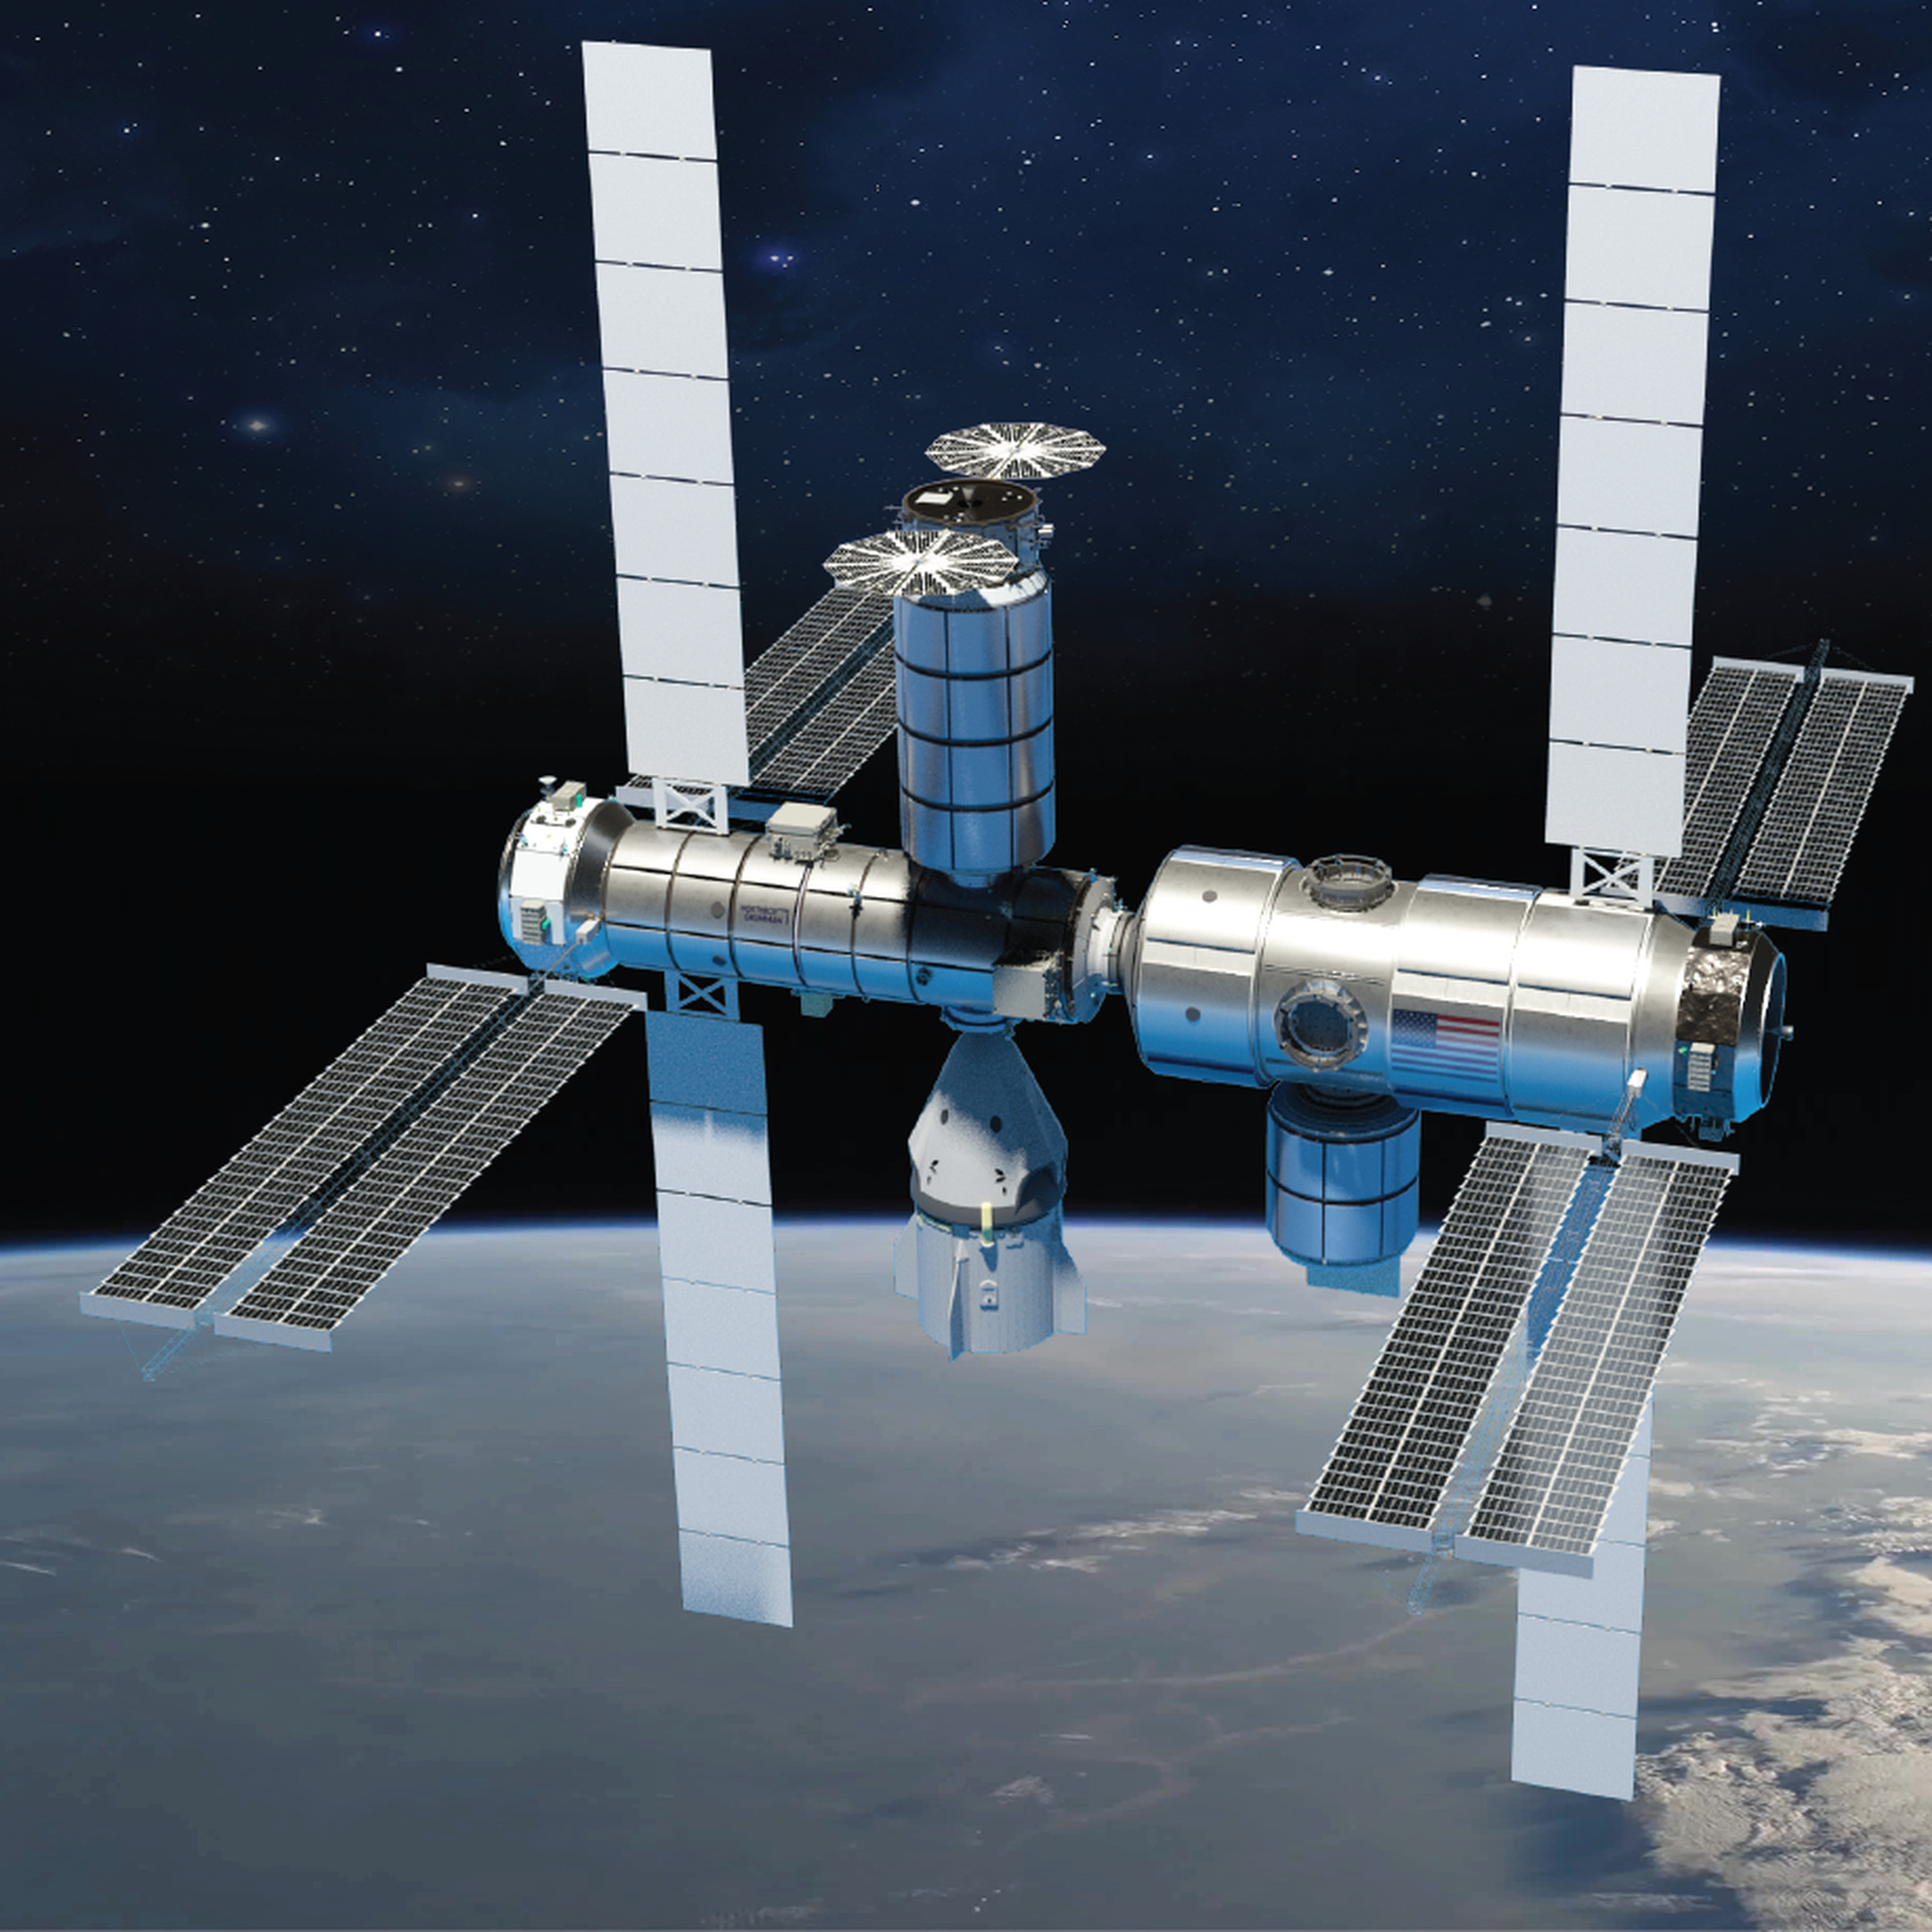 Northrop Grumman space station